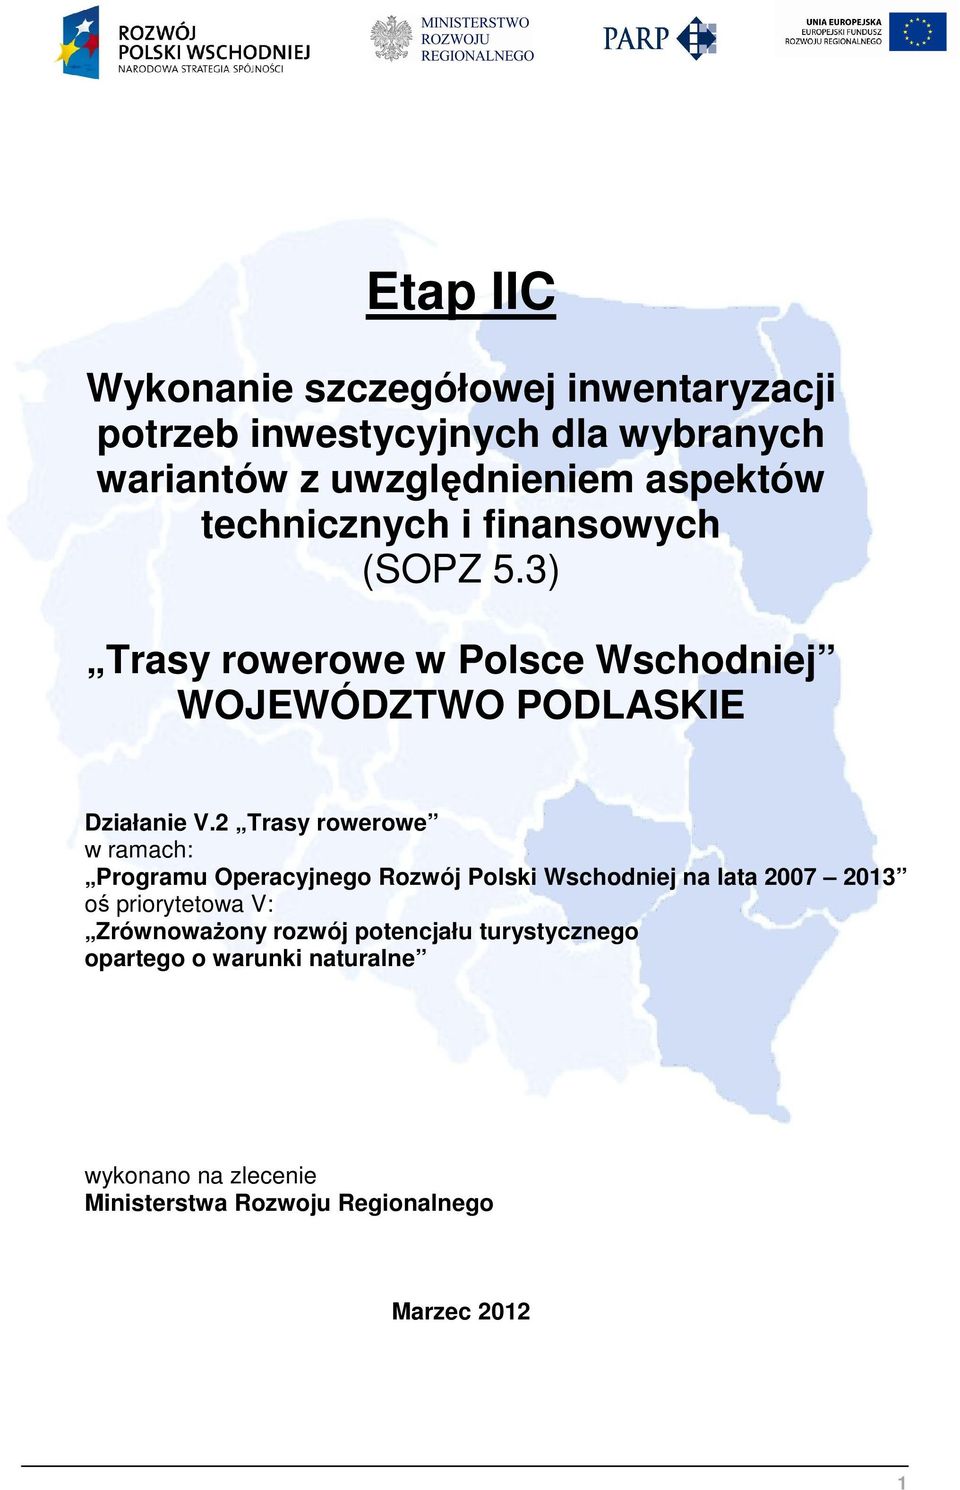 2 Trasy rowerowe w ramach: Programu Operacyjnego Rozwój Polski Wschodniej na lata 2007 2013 oś priorytetowa V: